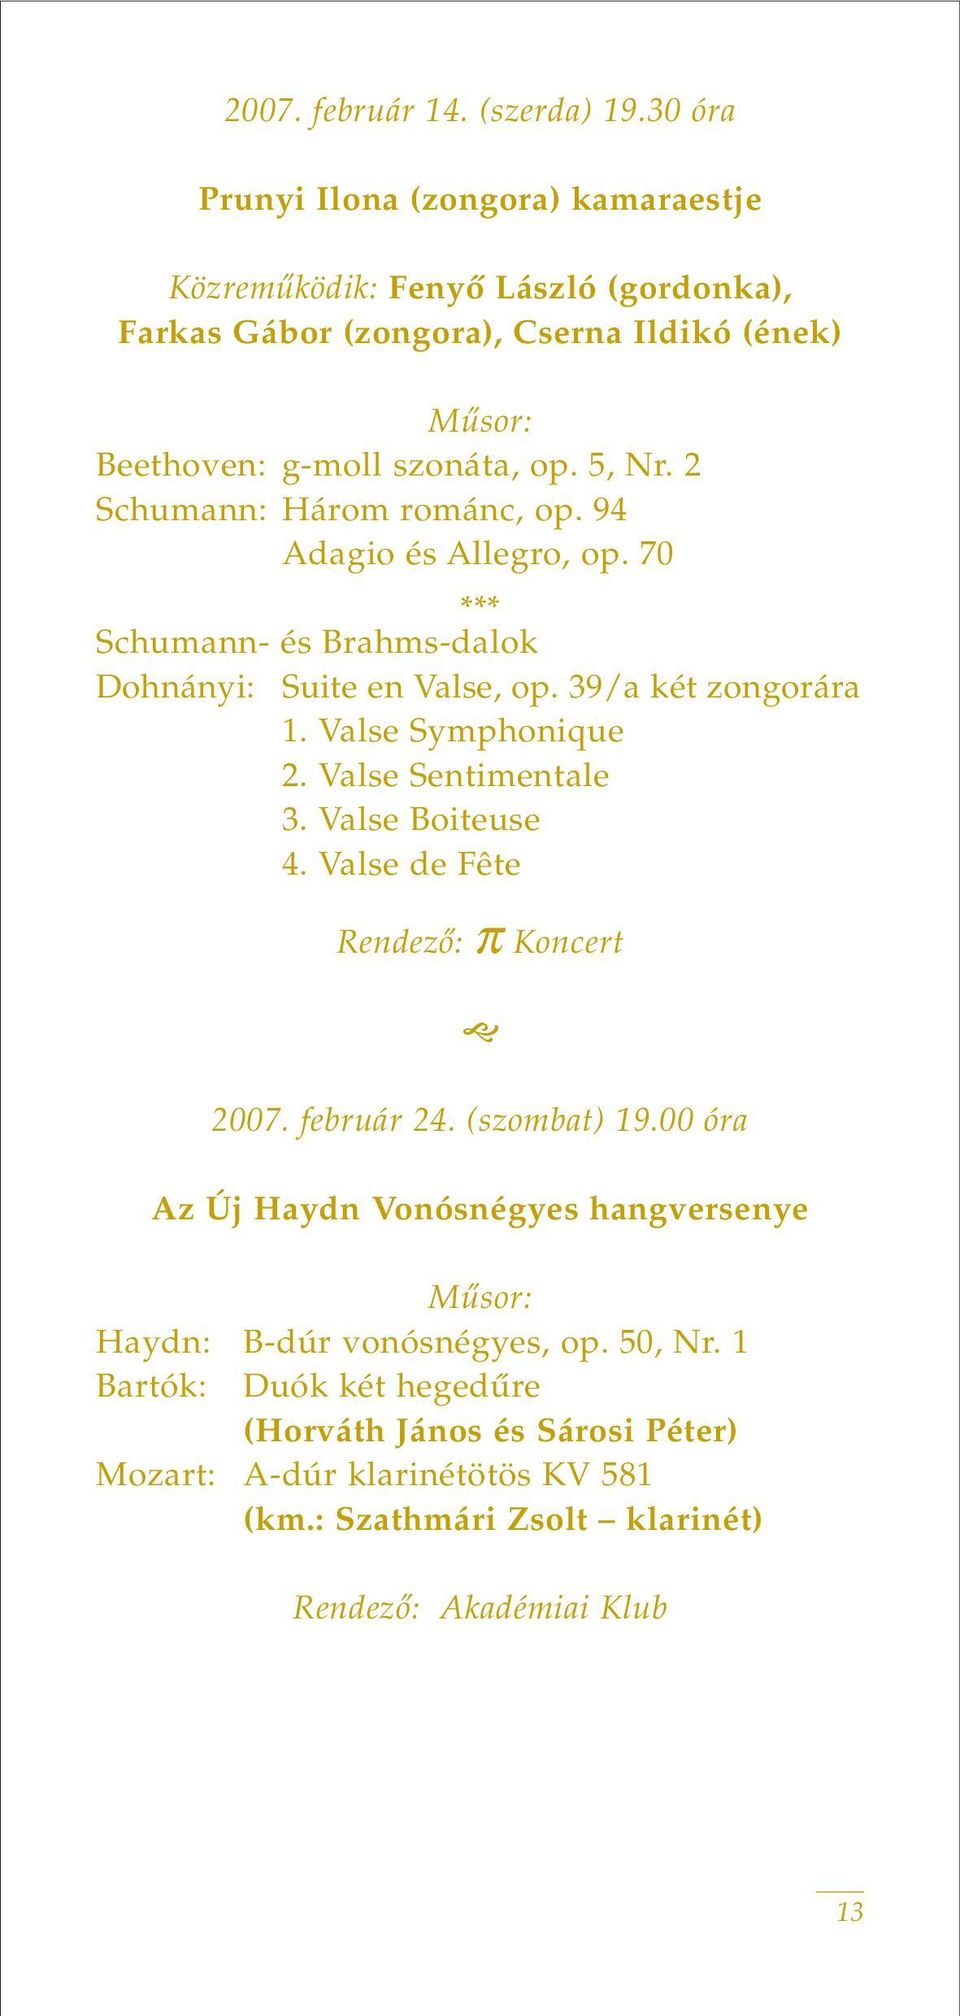 2 Schumann: Három románc, op. 94 Adagio és Allegro, op. 70 *** Schumann- és Brahms-dalok Dohnányi: Suite en Valse, op. 39/a két zongorára 1. Valse Symphonique 2.